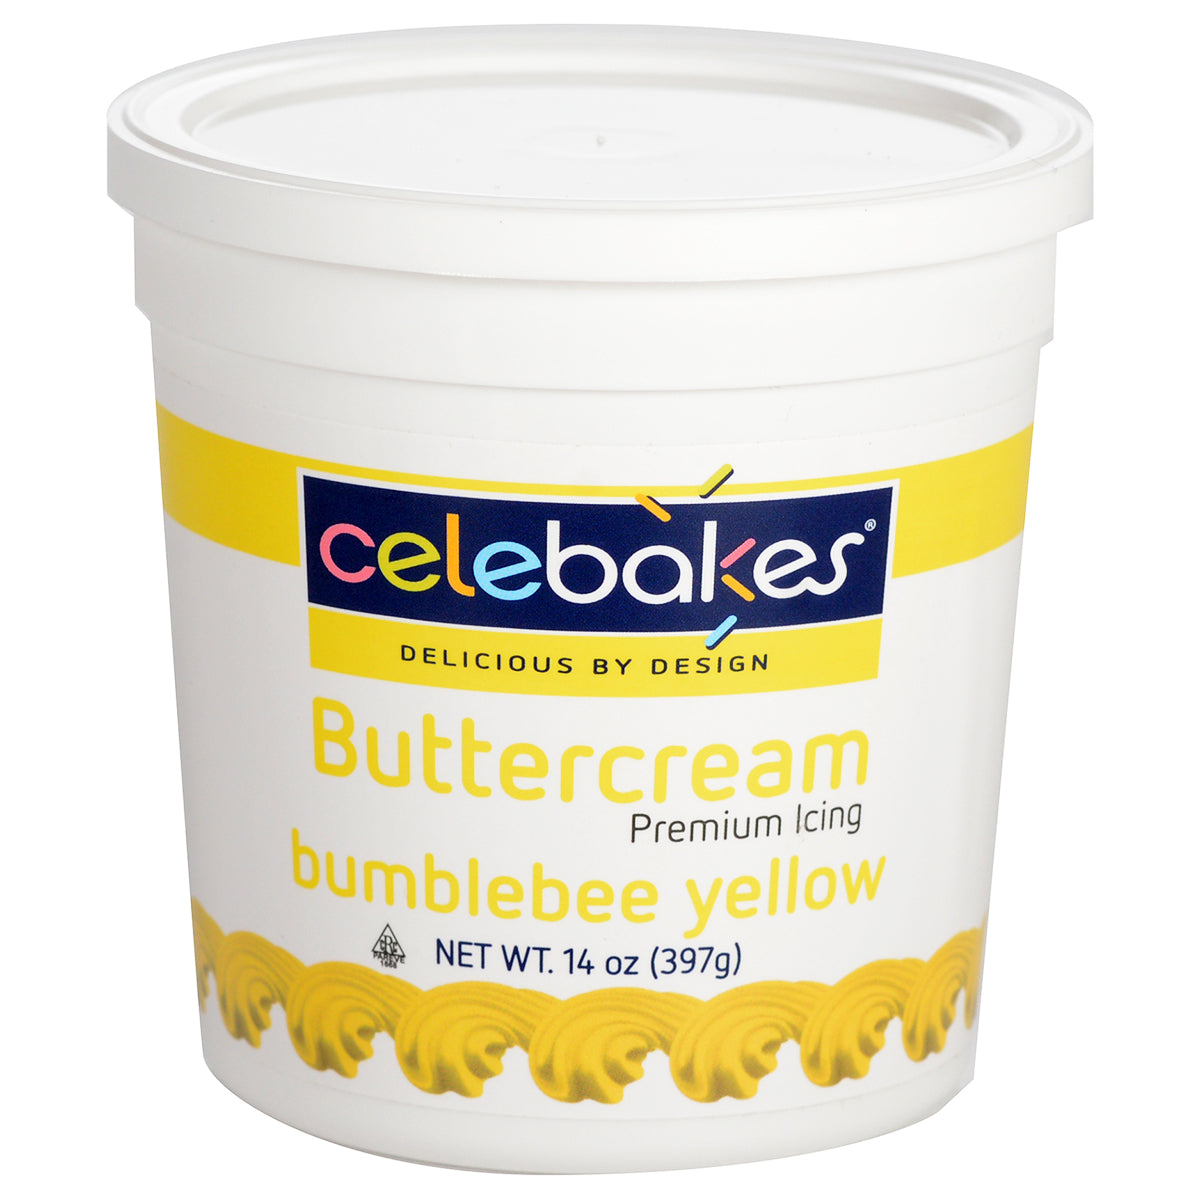 14oz Bumblebee Yellow Buttercream, Celebakes